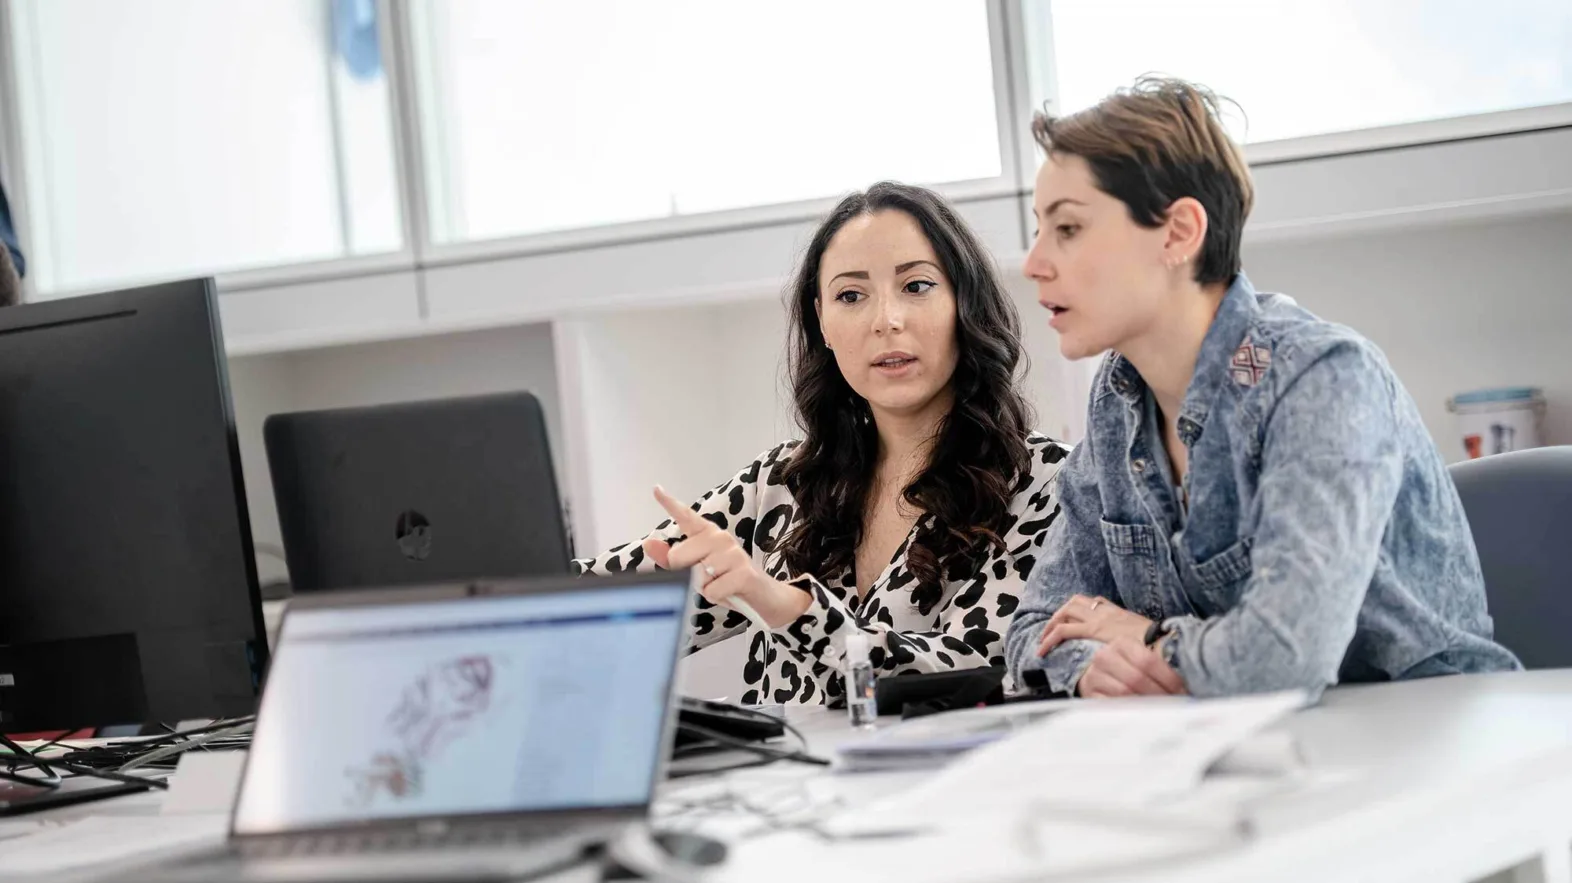 Arbeitssituation: Zwei Frauen diskutieren vor einem Computer-Bildschirm